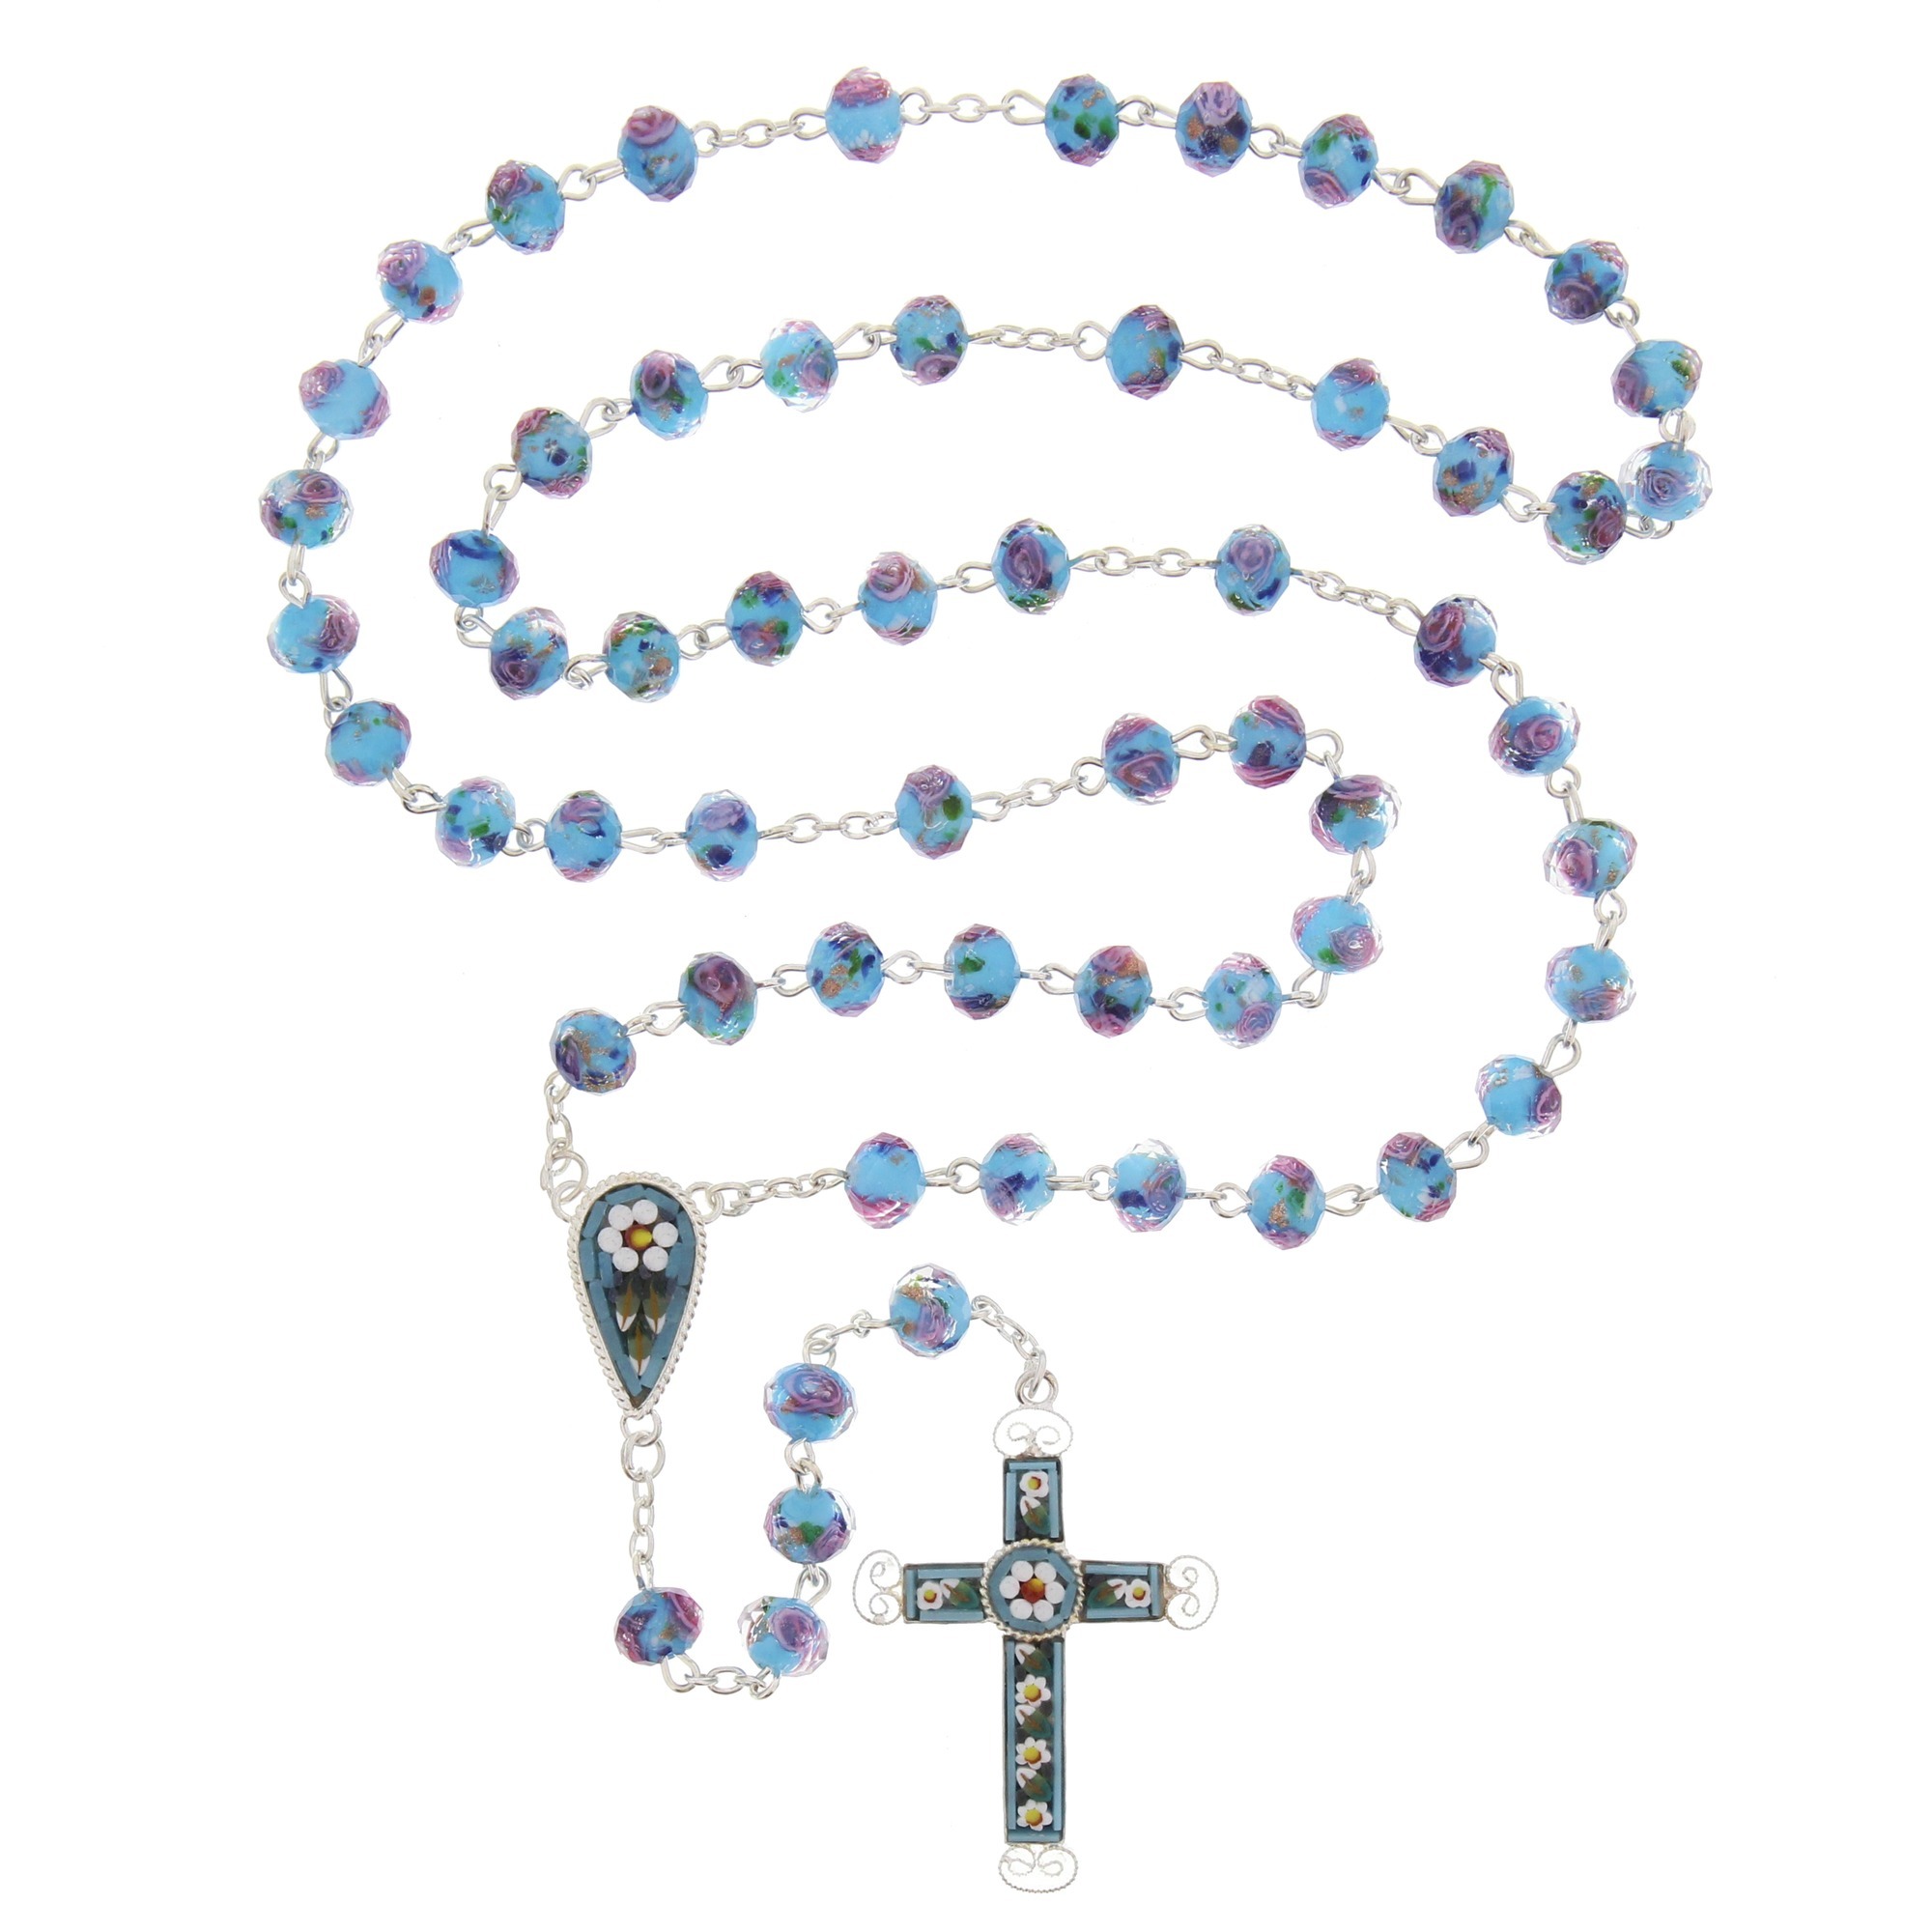 Aqua Blue Florentine Mosaic Rosary | Rosary.com™